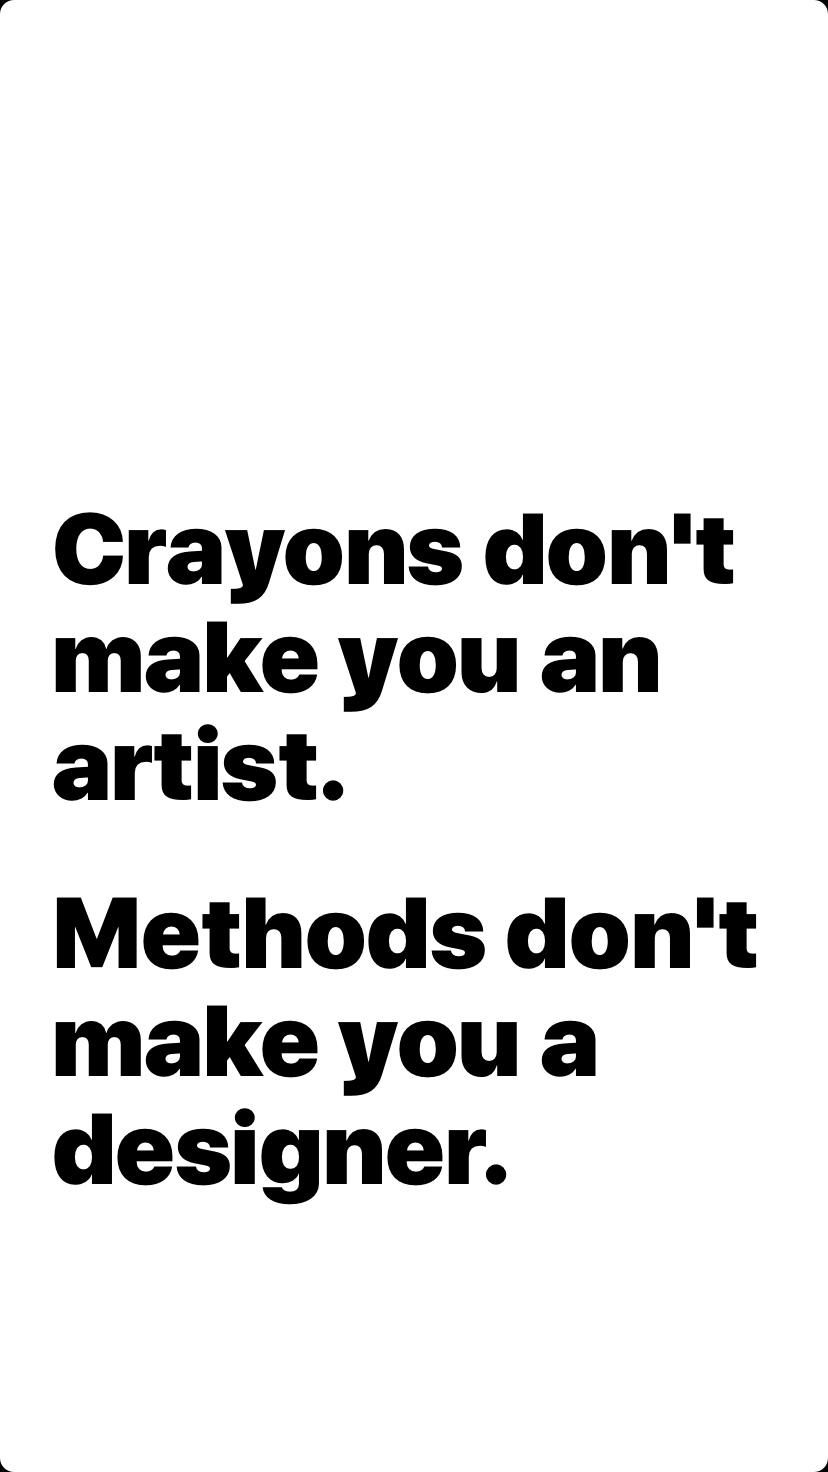 Methods don't make you a designer.